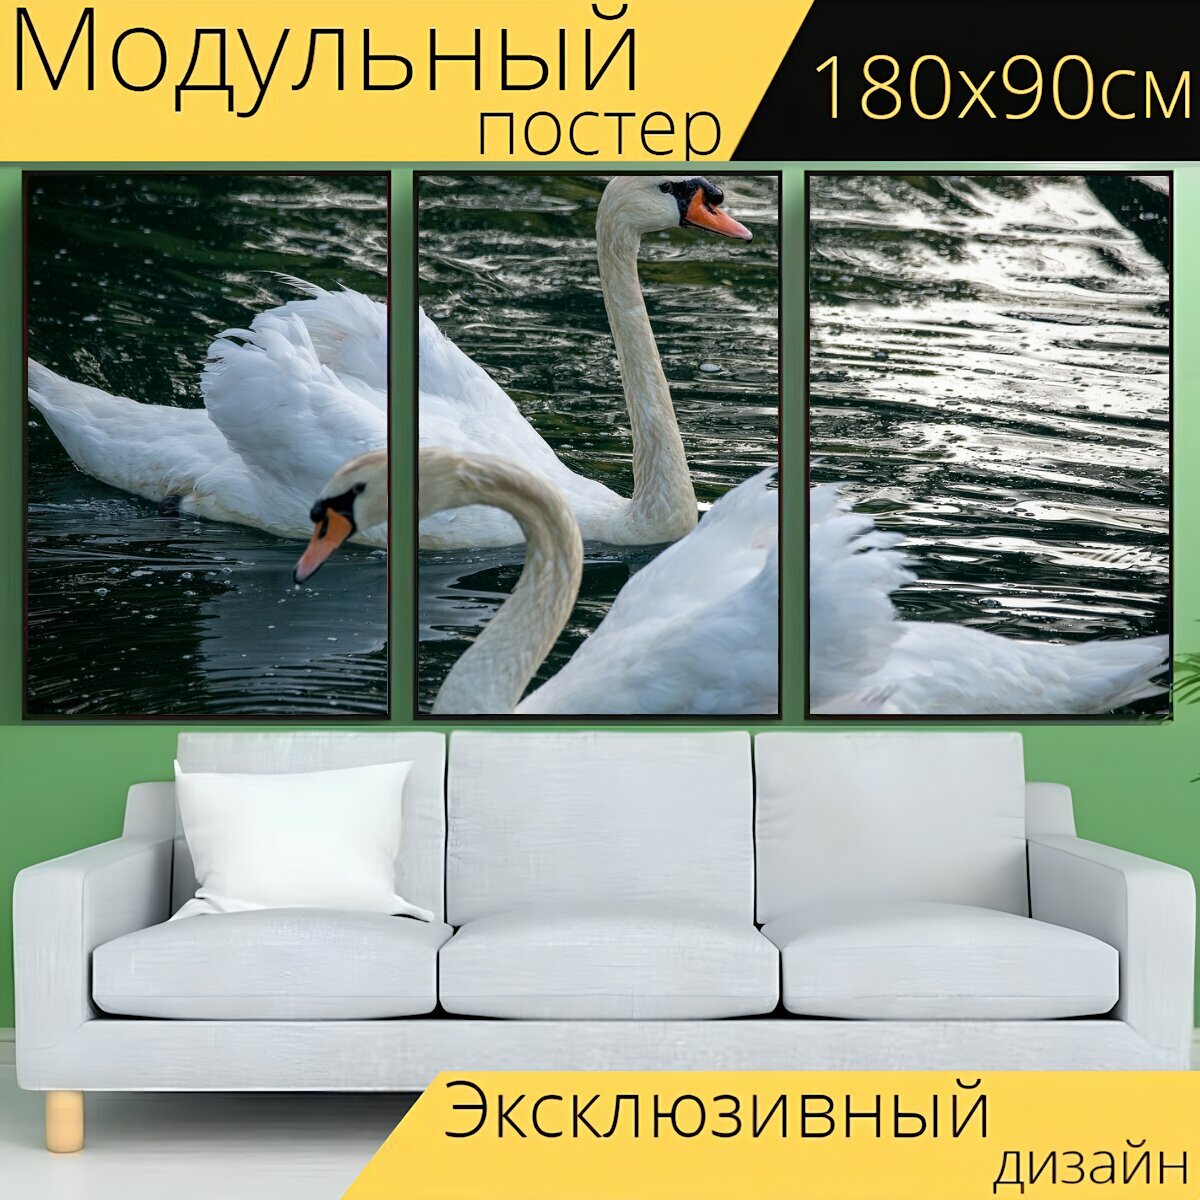 Модульный постер "Лебедь, немой лебедь, лебеди" 180 x 90 см. для интерьера